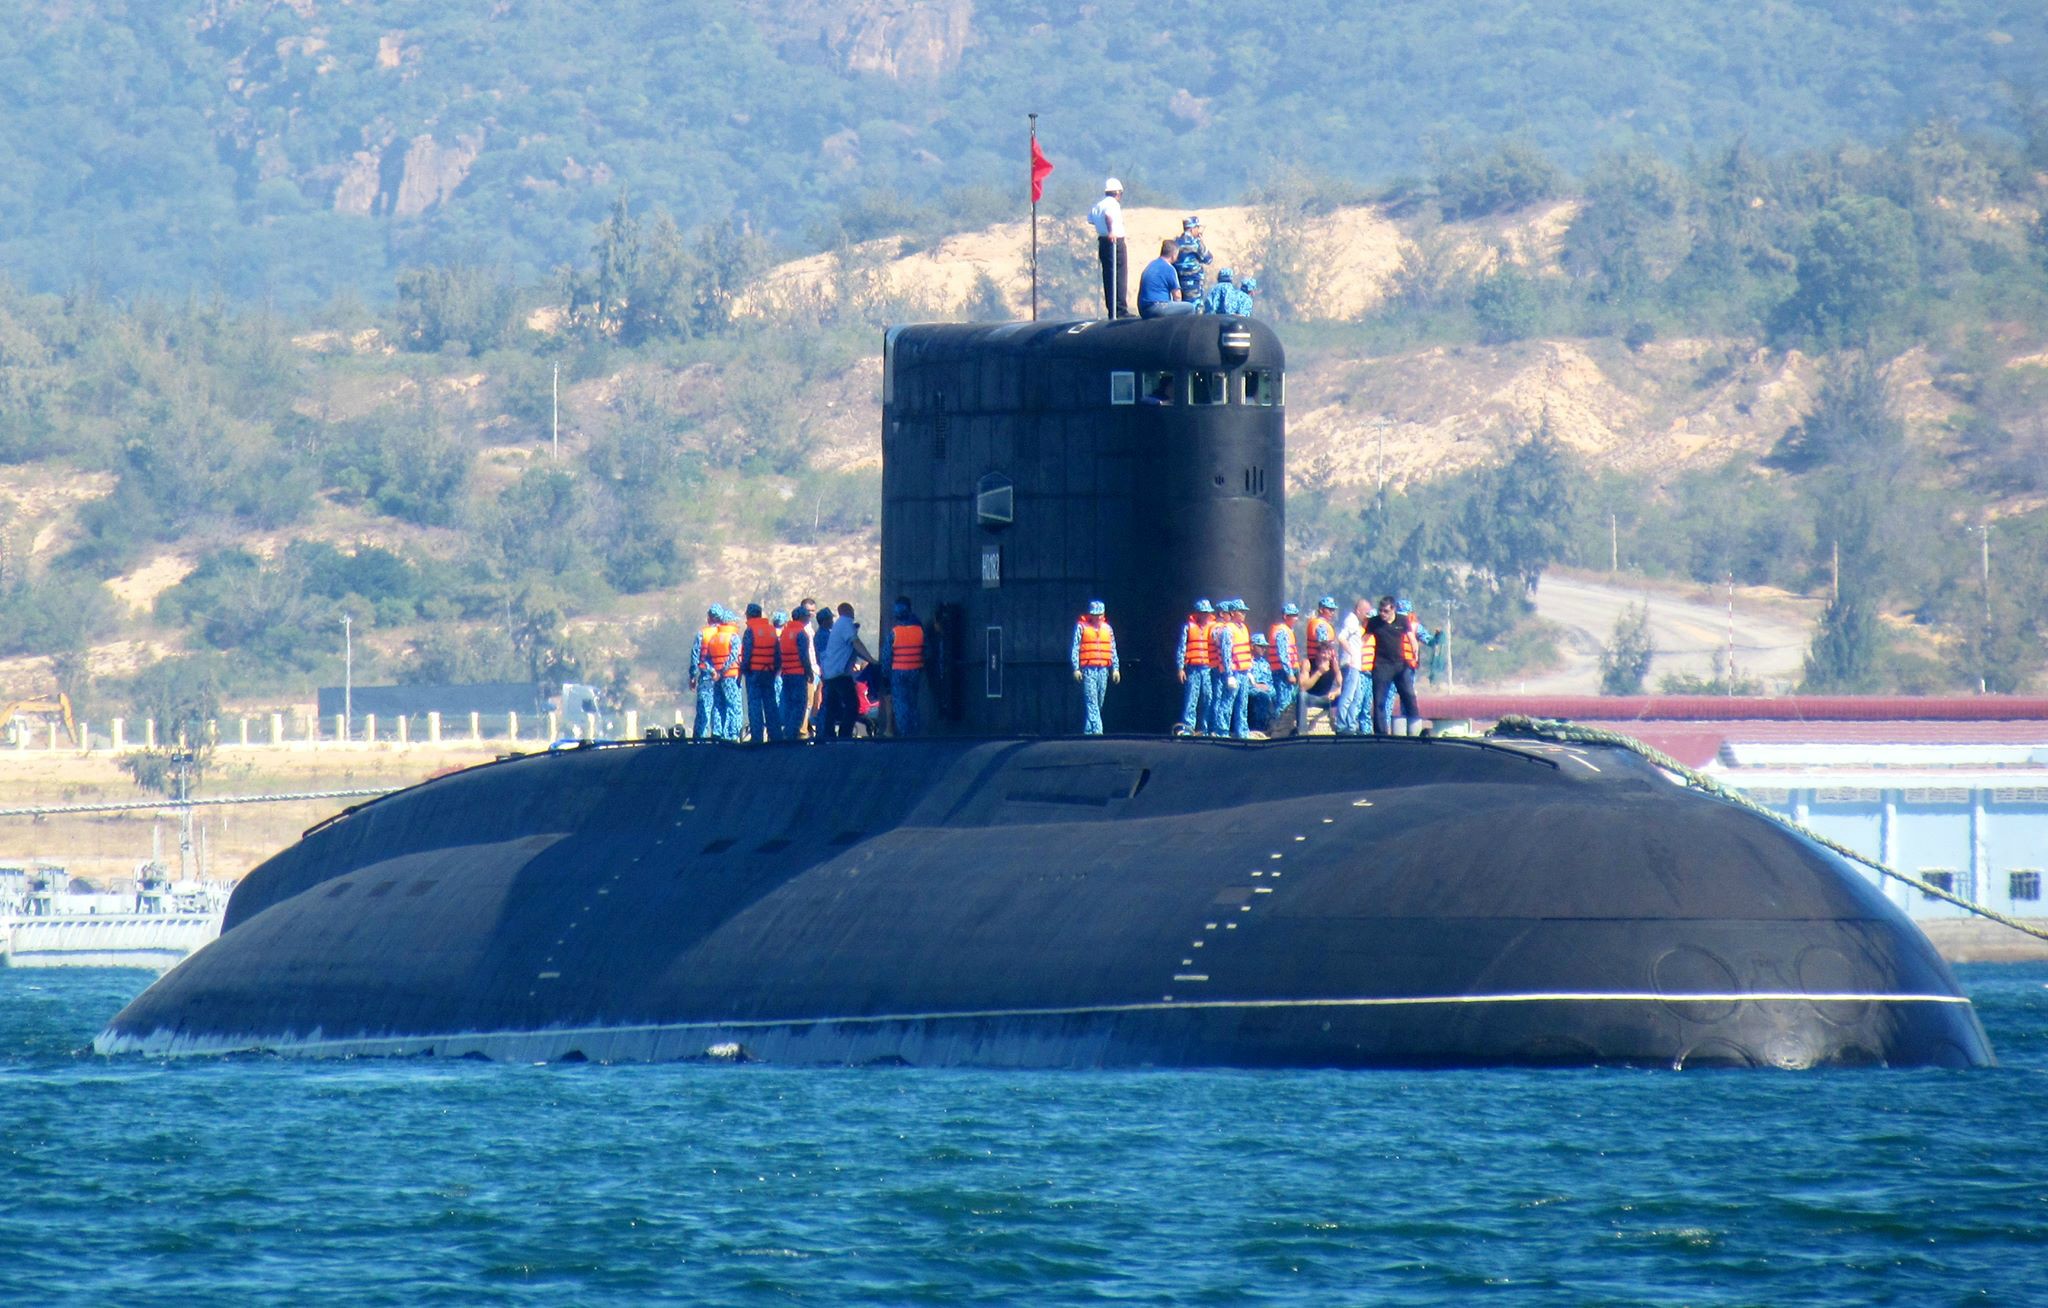 Пл ев. Подводная лодка 636 Варшавянка. Подводных лодок проекта 636 «Варшавянка». Проект 636.3. Подводная лодка проекта 877 Варшавянка.